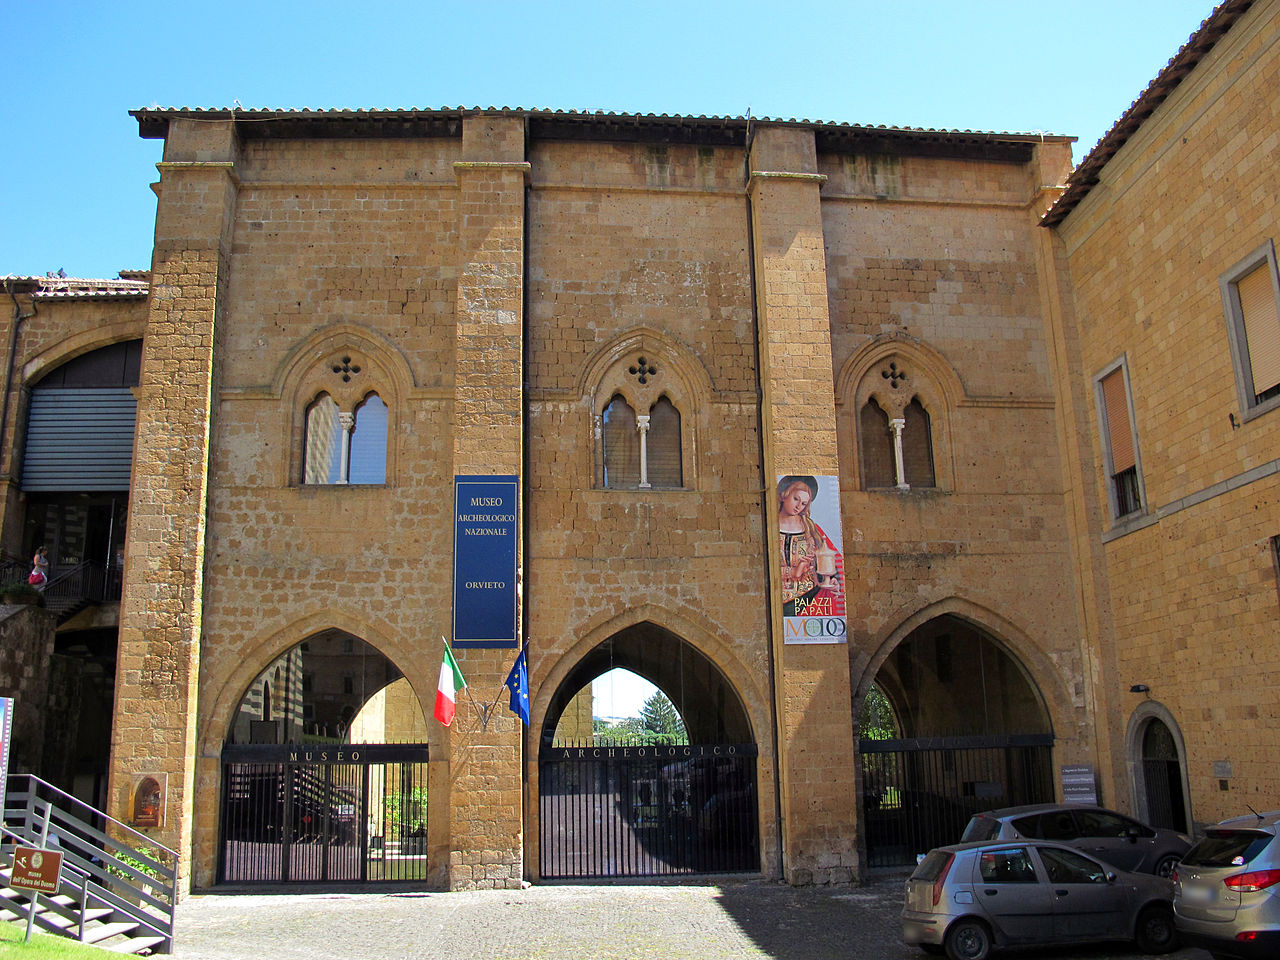 Museo Archeologico Nazionale di Orvieto, Orvieto, Italy